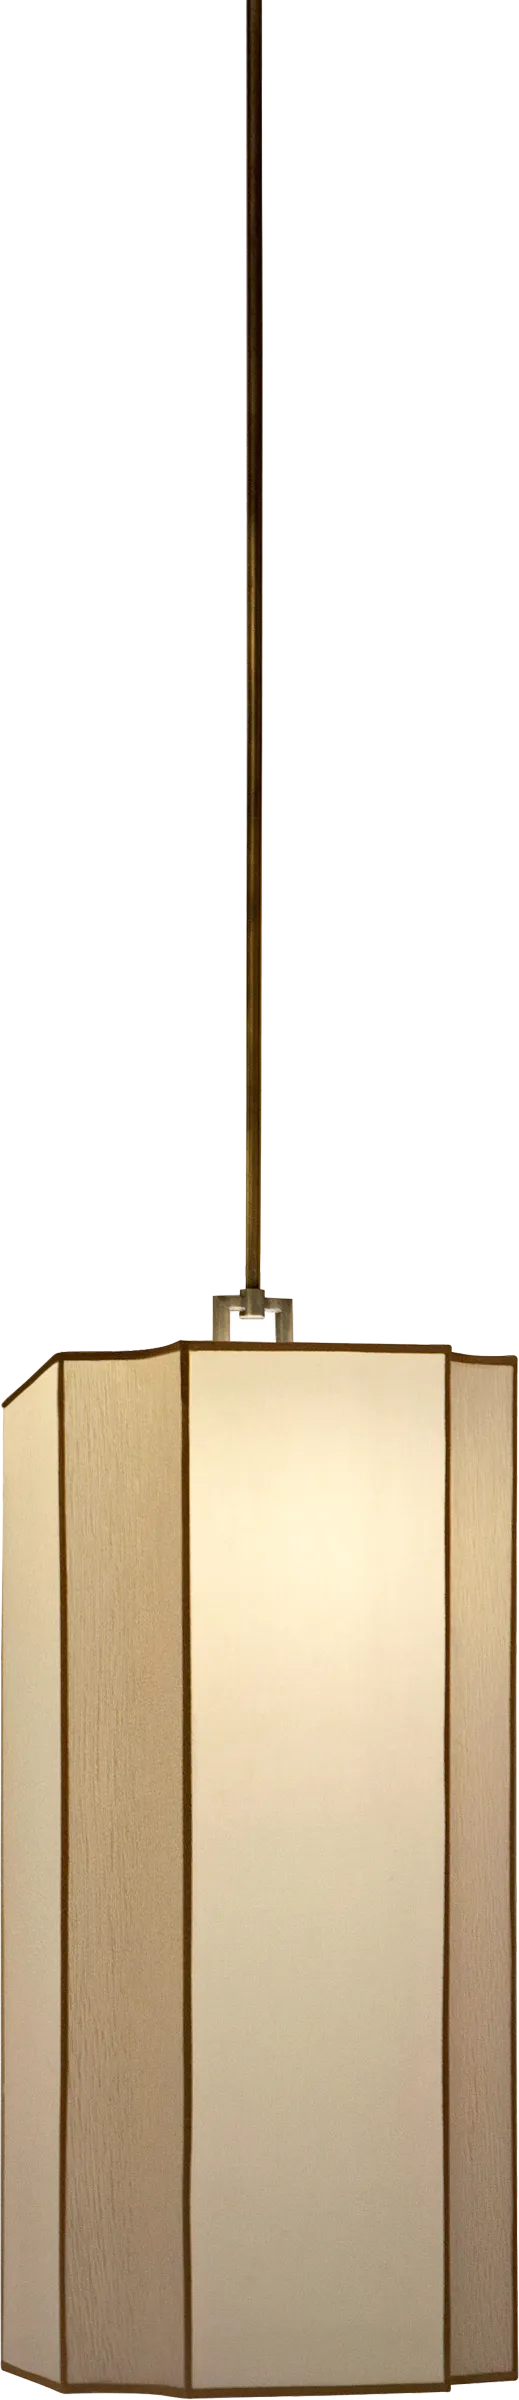 Bauta 2-3 Ceiling Lamp